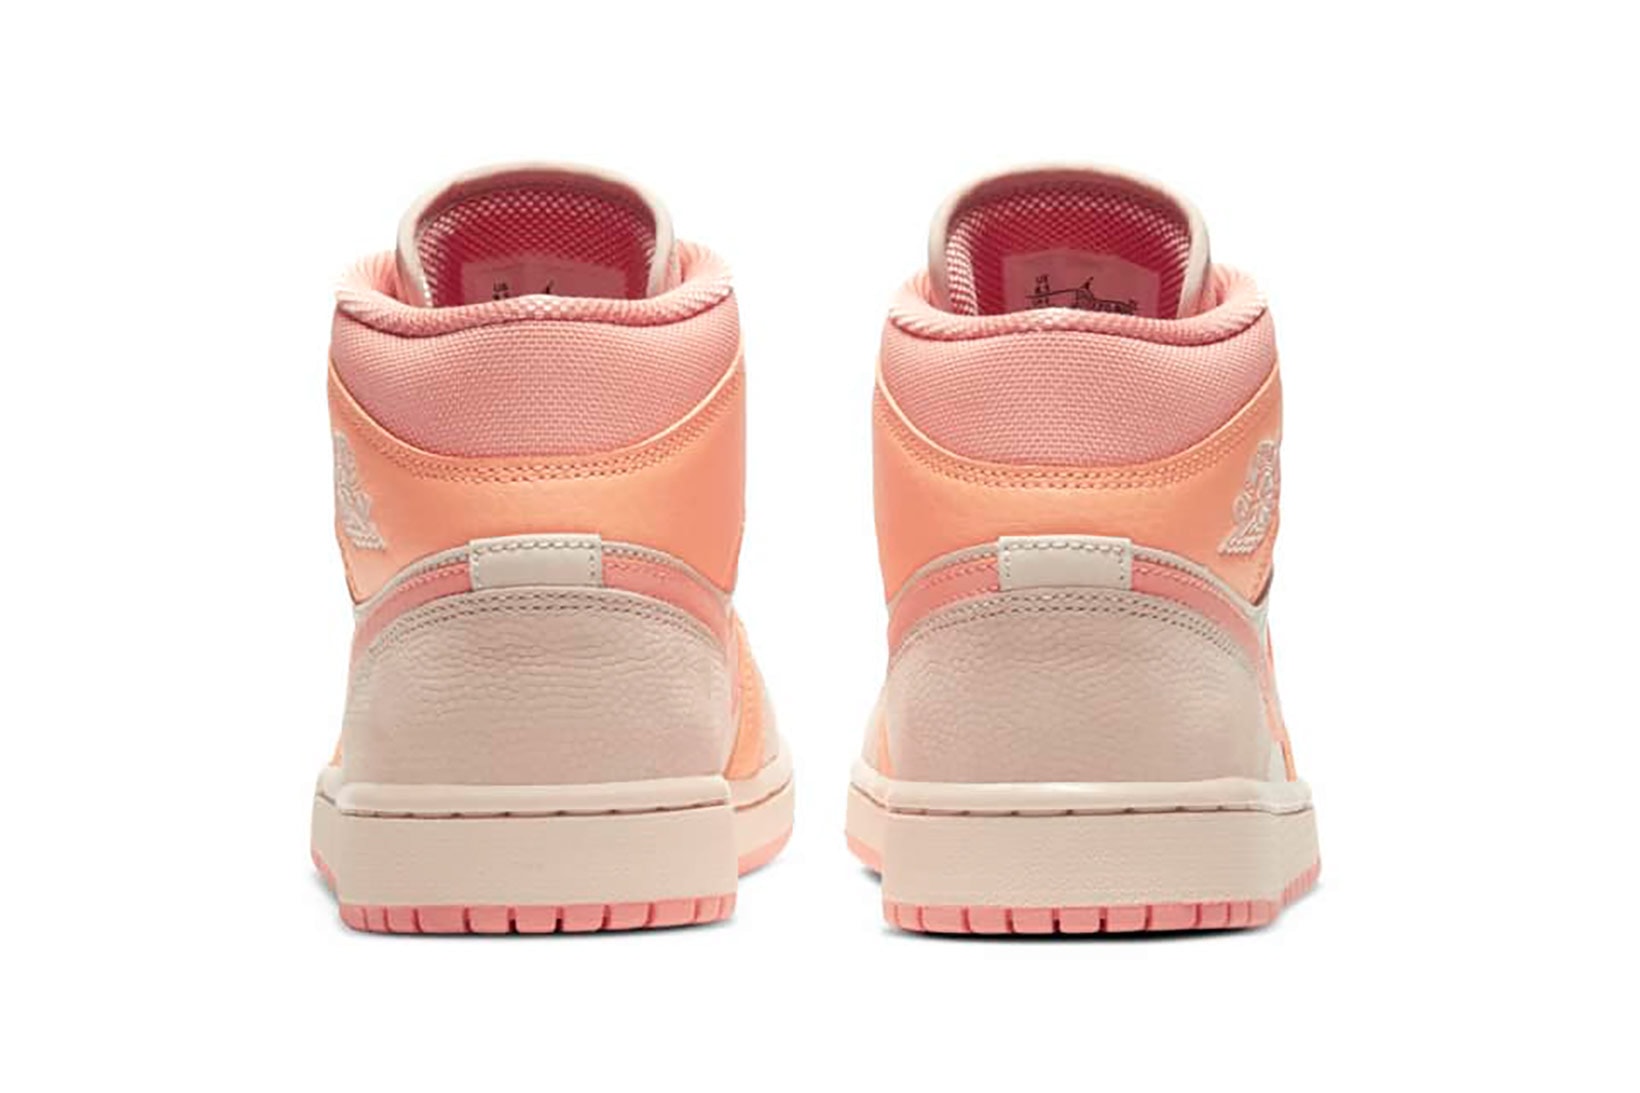 nike air jordan 1 aj1 mid womens sneakers apricot orange pink colorway shoes footwear sneakerhead kicks heel